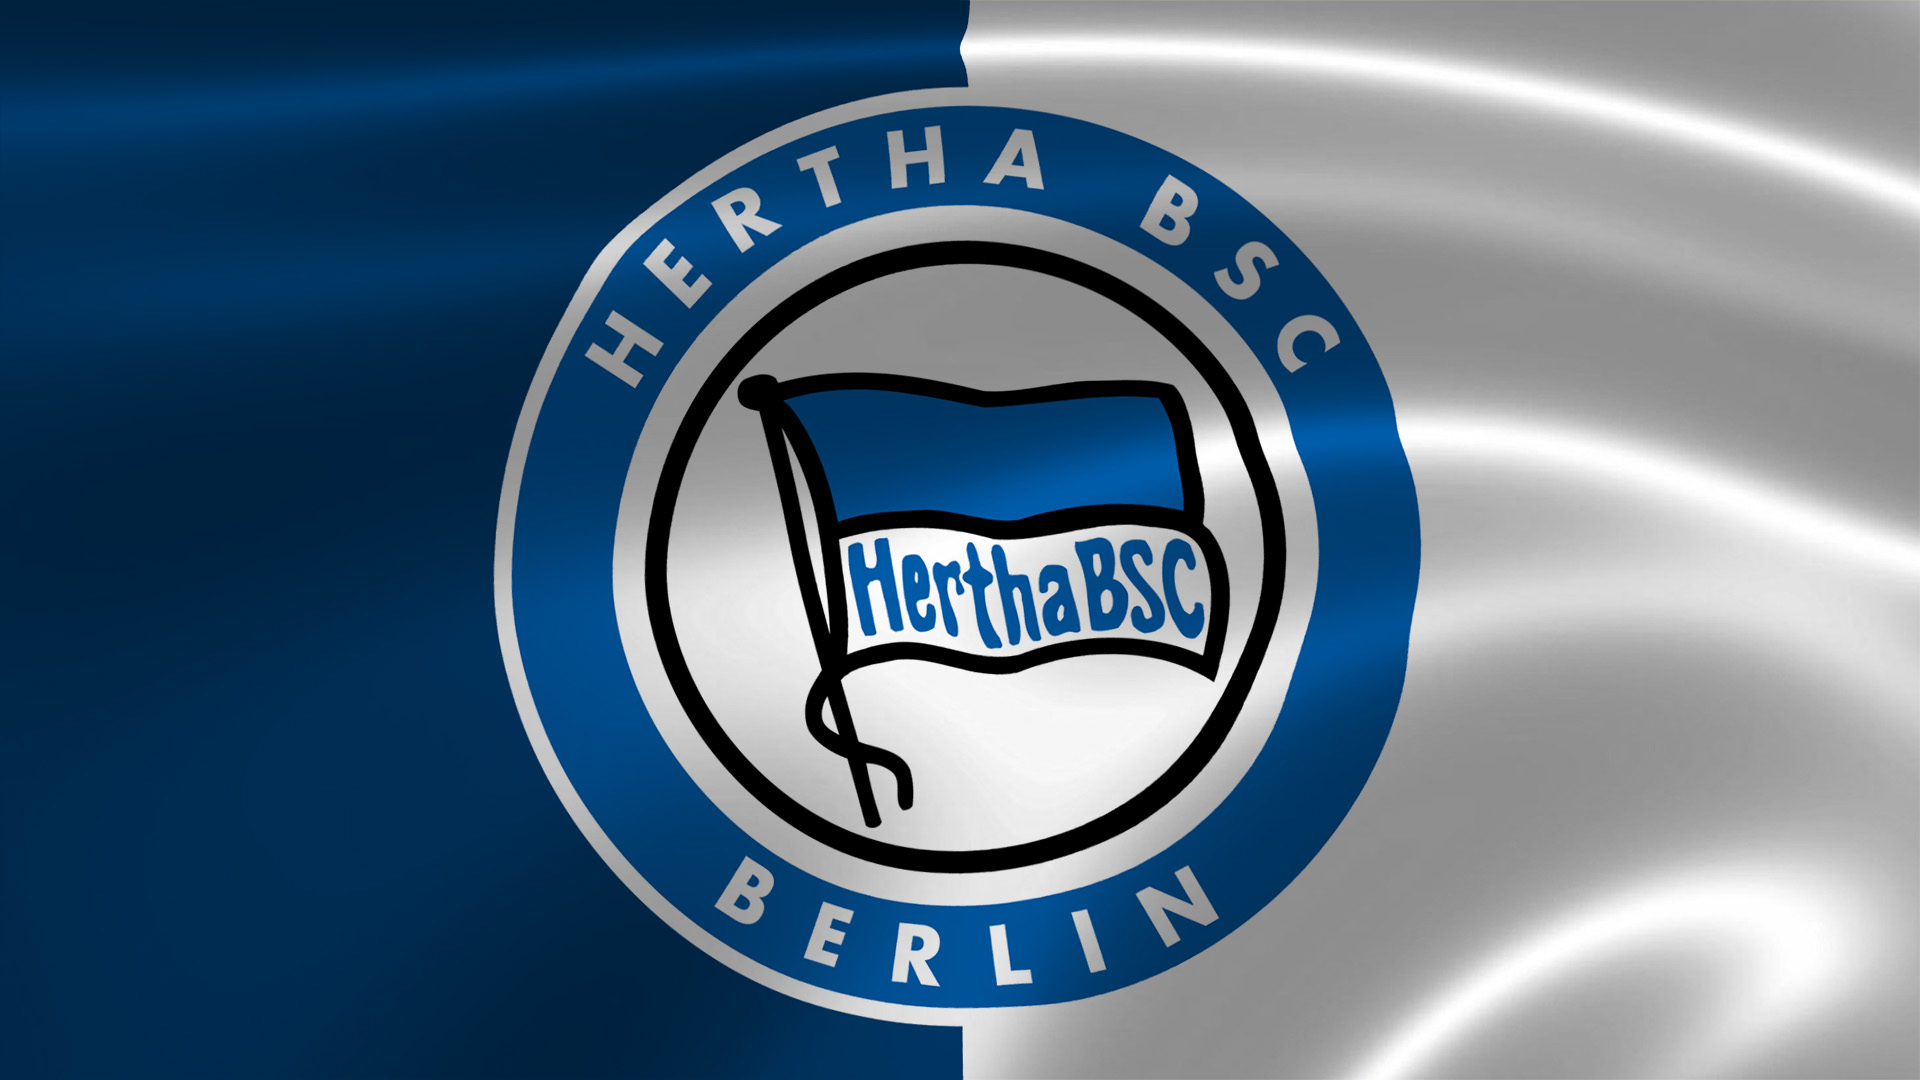 hertha-bsc-berlin003_1920x1080.jpg